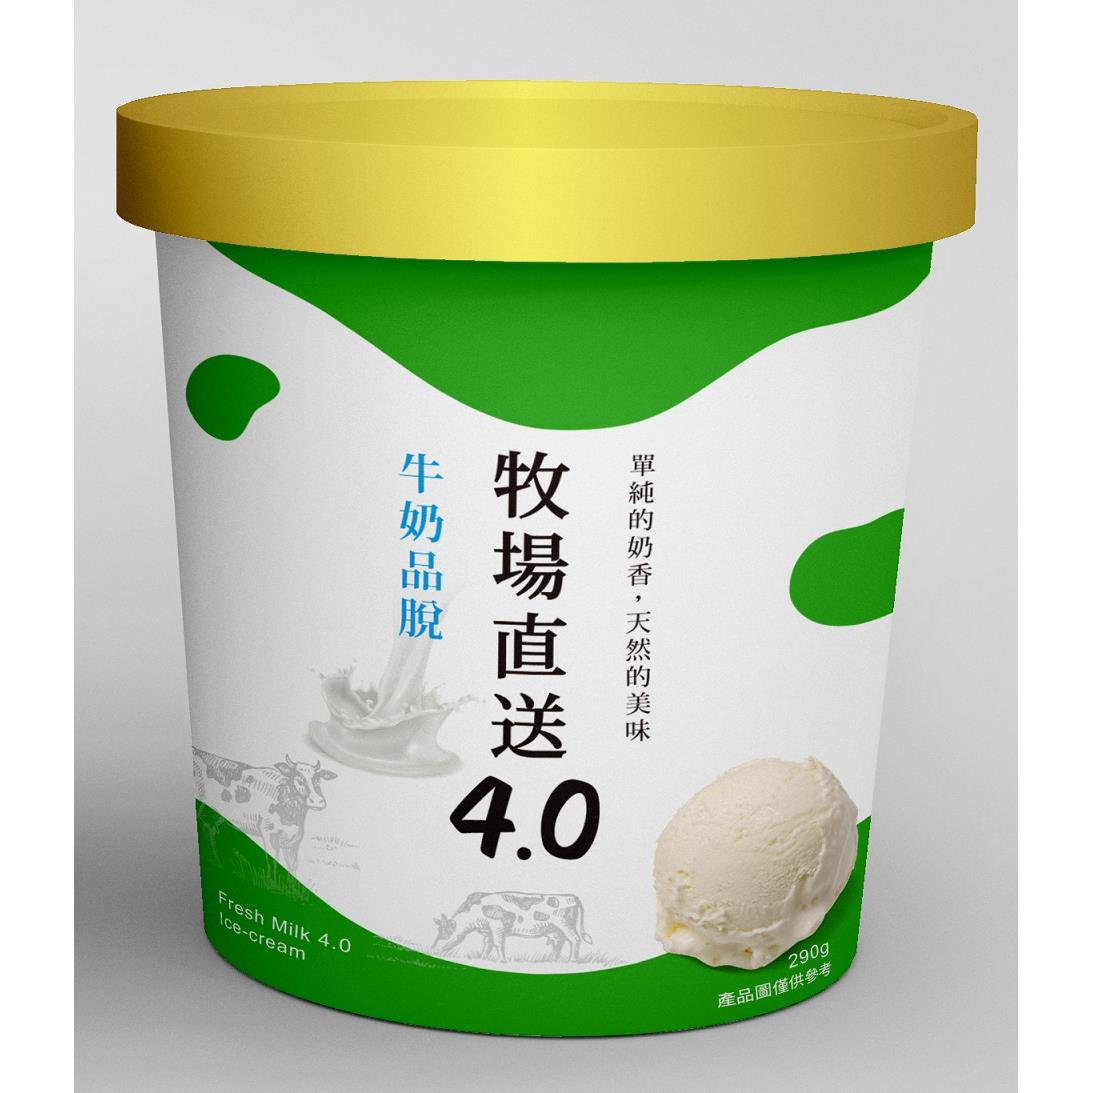 【冷凍店取－牧場直送】牧場直送4.0牛奶品脫(290gx1個)